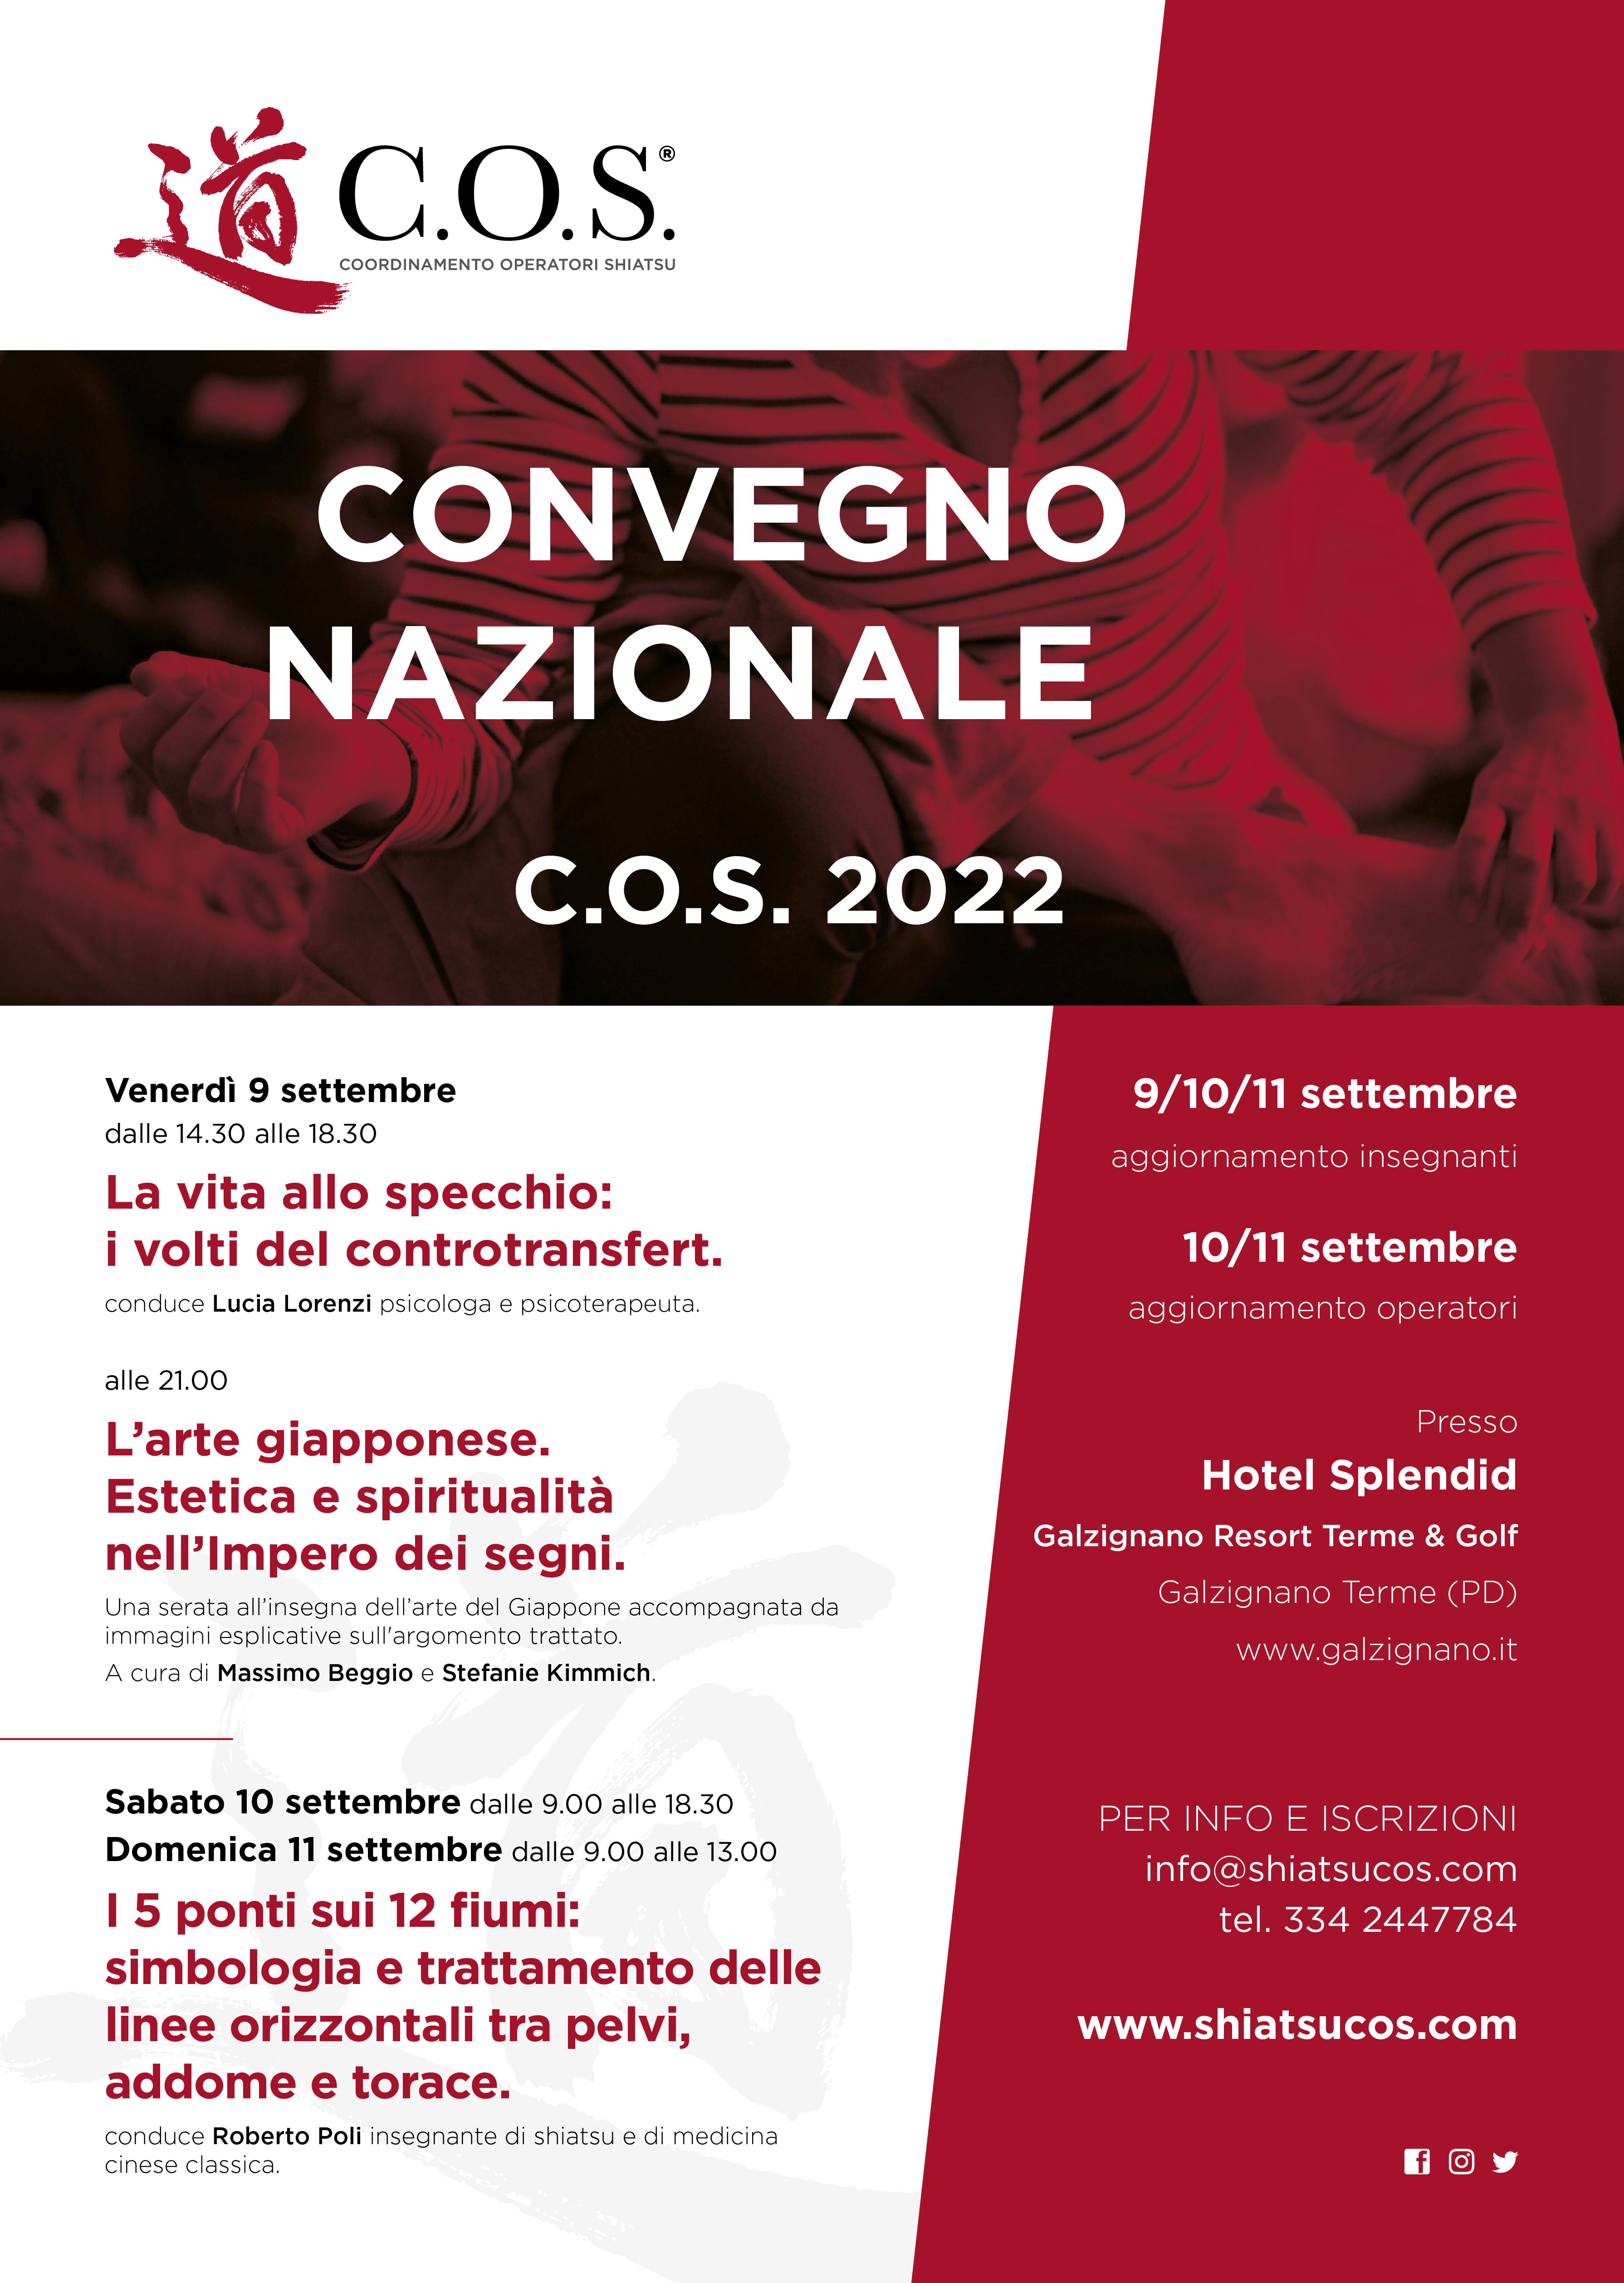 Convegno C.O.S. 2022